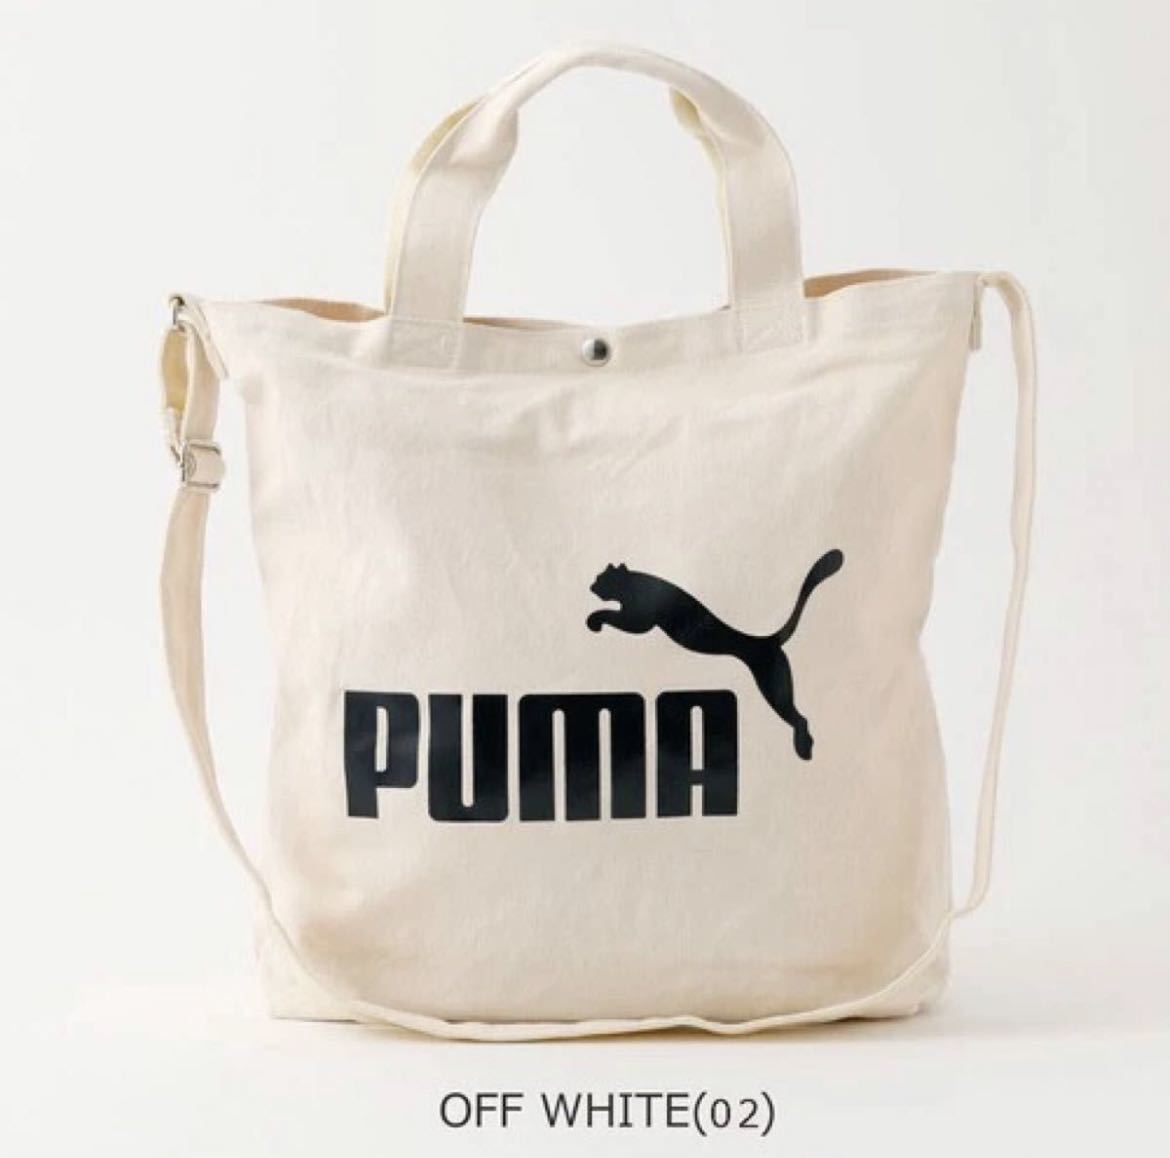 PUMA【プーマ/PUMA】 トートバッグ | スポーツ 即納 キャンバス 習い事 学生 エコバッグ トラベル